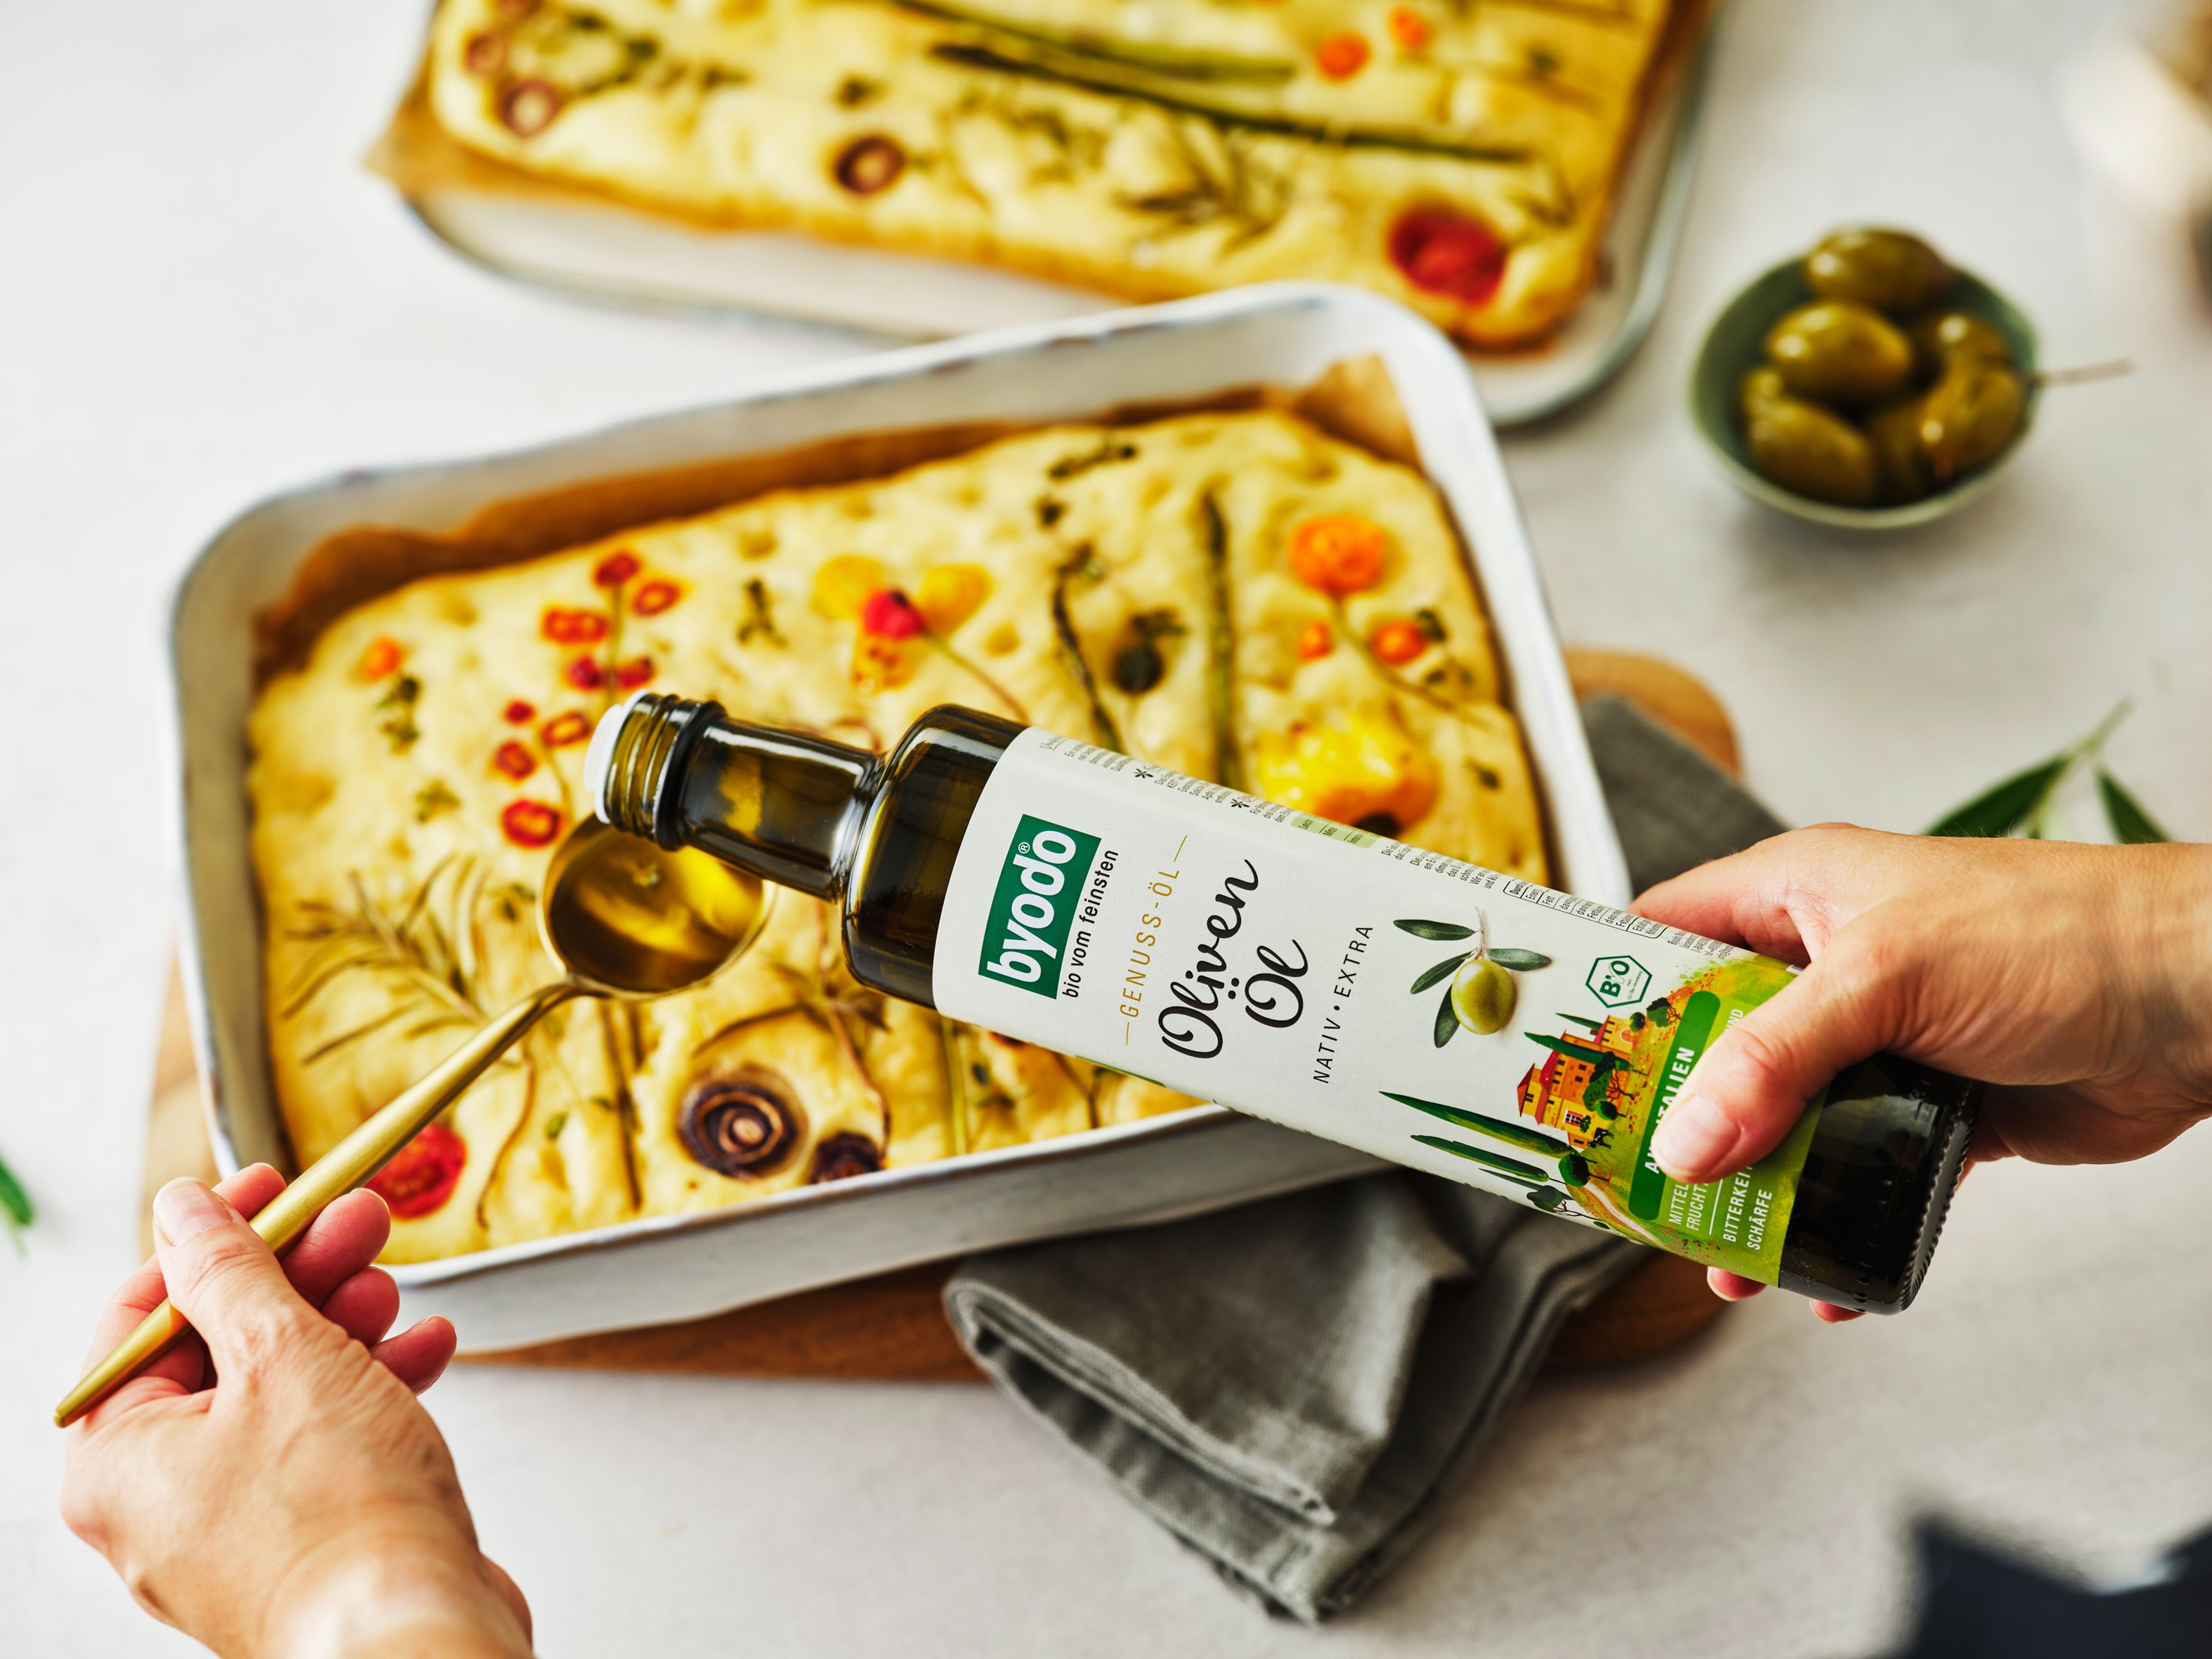 Die Focaccia aus dem Ofen nehmen und kurz auf einem Gitter etwas abkühlen lassen. Dann mit Italienischem Olivenöl beträufeln und frisch servieren.